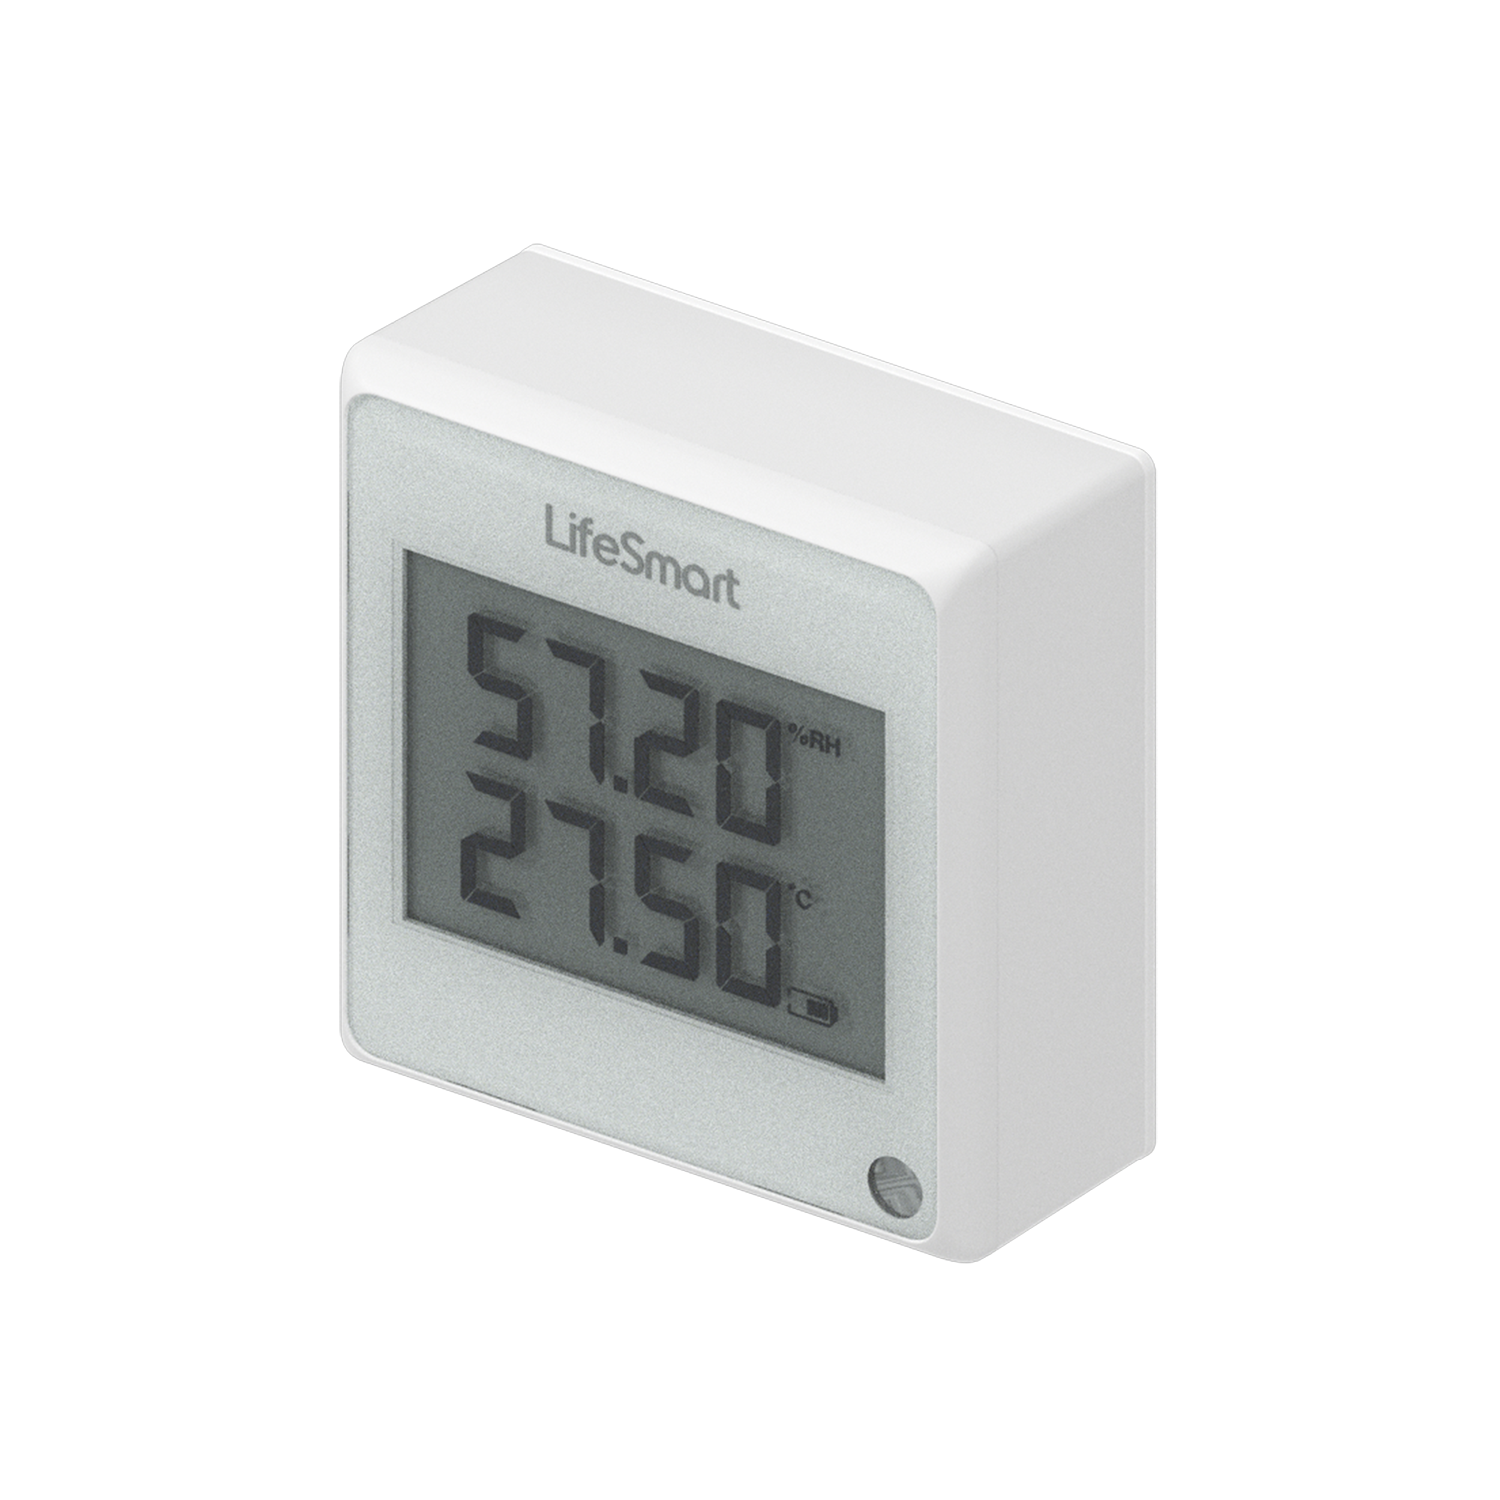  - Sensor meteorológica LifeSmart 1